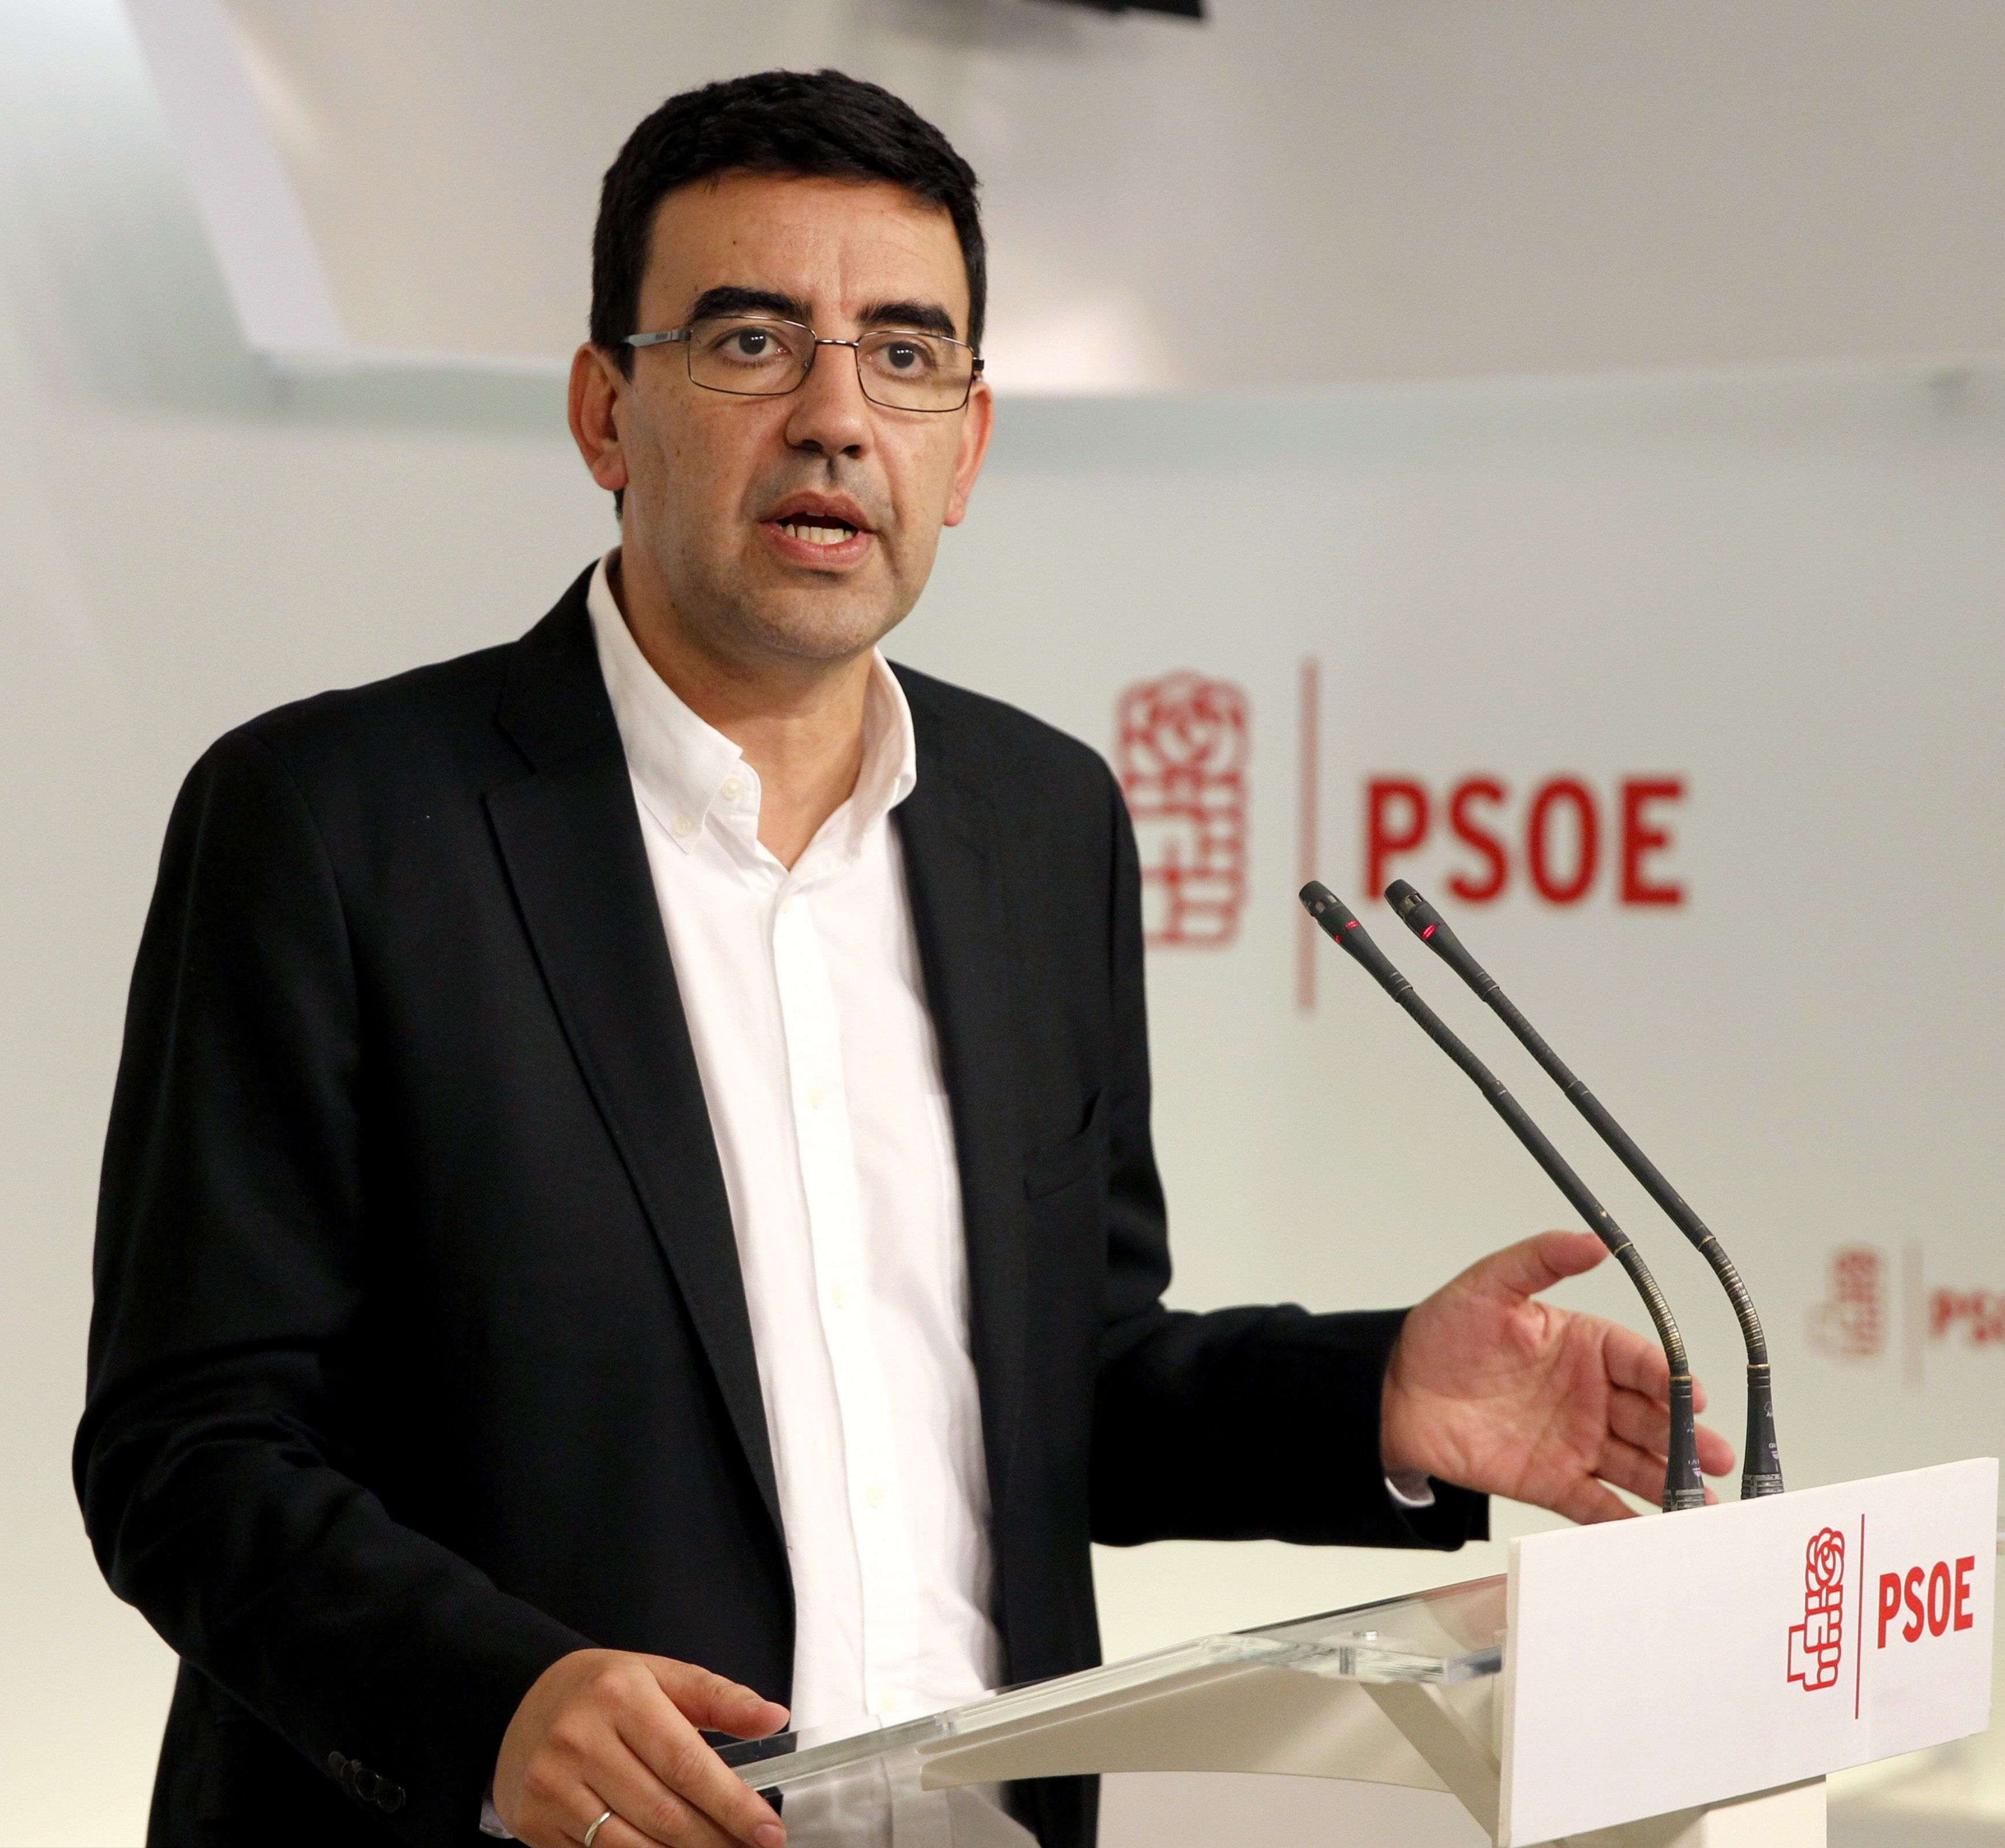 El PSOE ve "nula capacidad de diálogo" en el nuevo gobierno de Rajoy